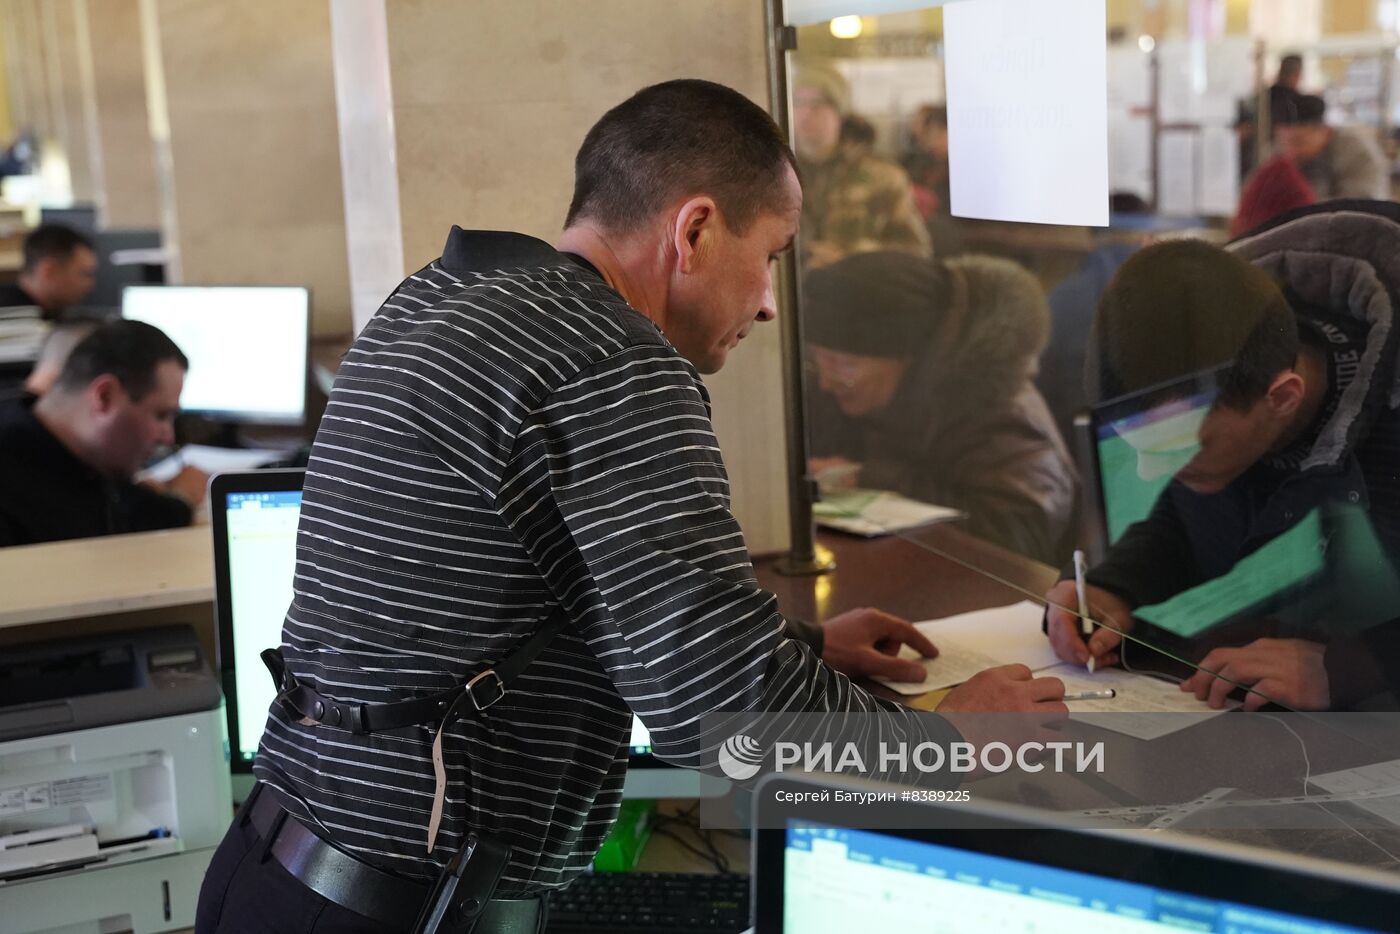 Новые пункты оформления паспортов РФ открылись в Донецке